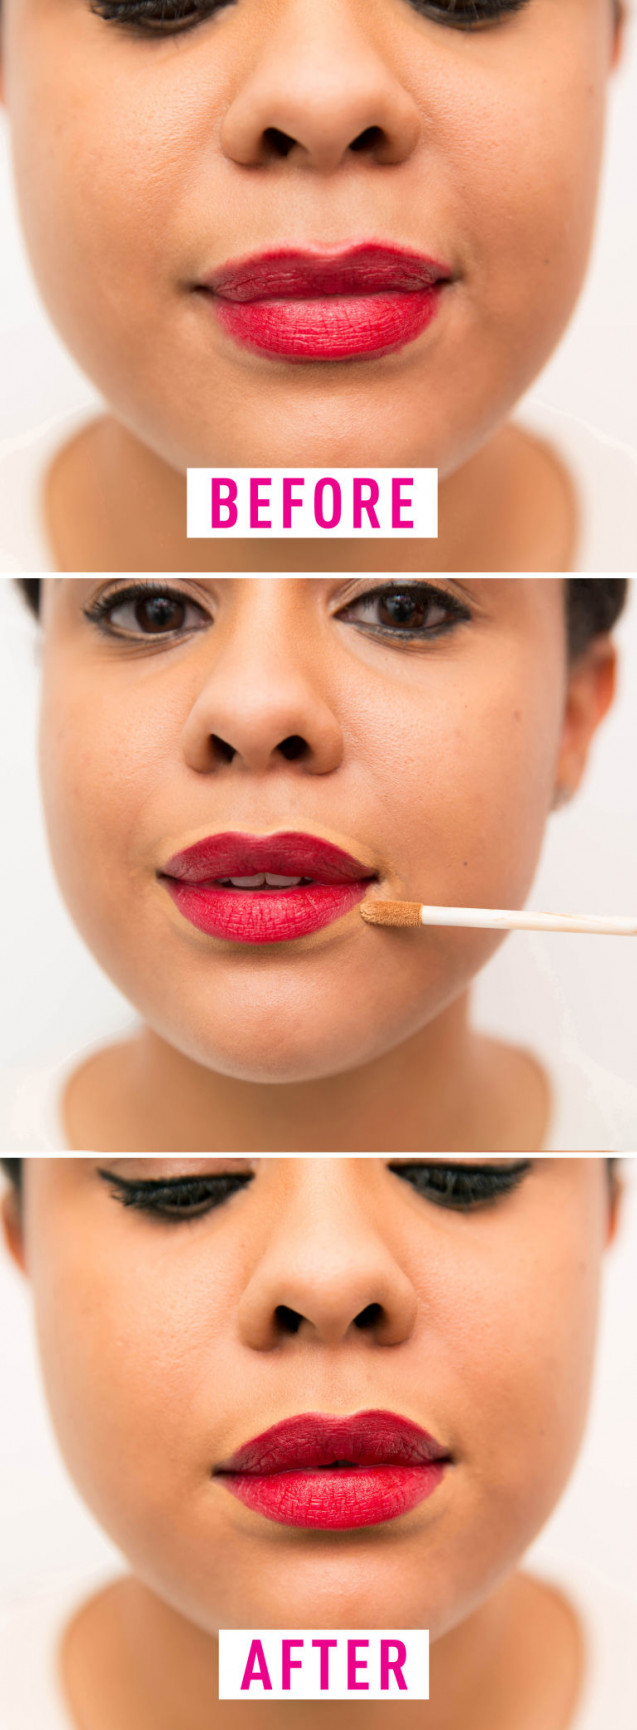 12 Cara Memakai Make Up Yang Seharusnya Kamu Lakukan Kawaii Beauty